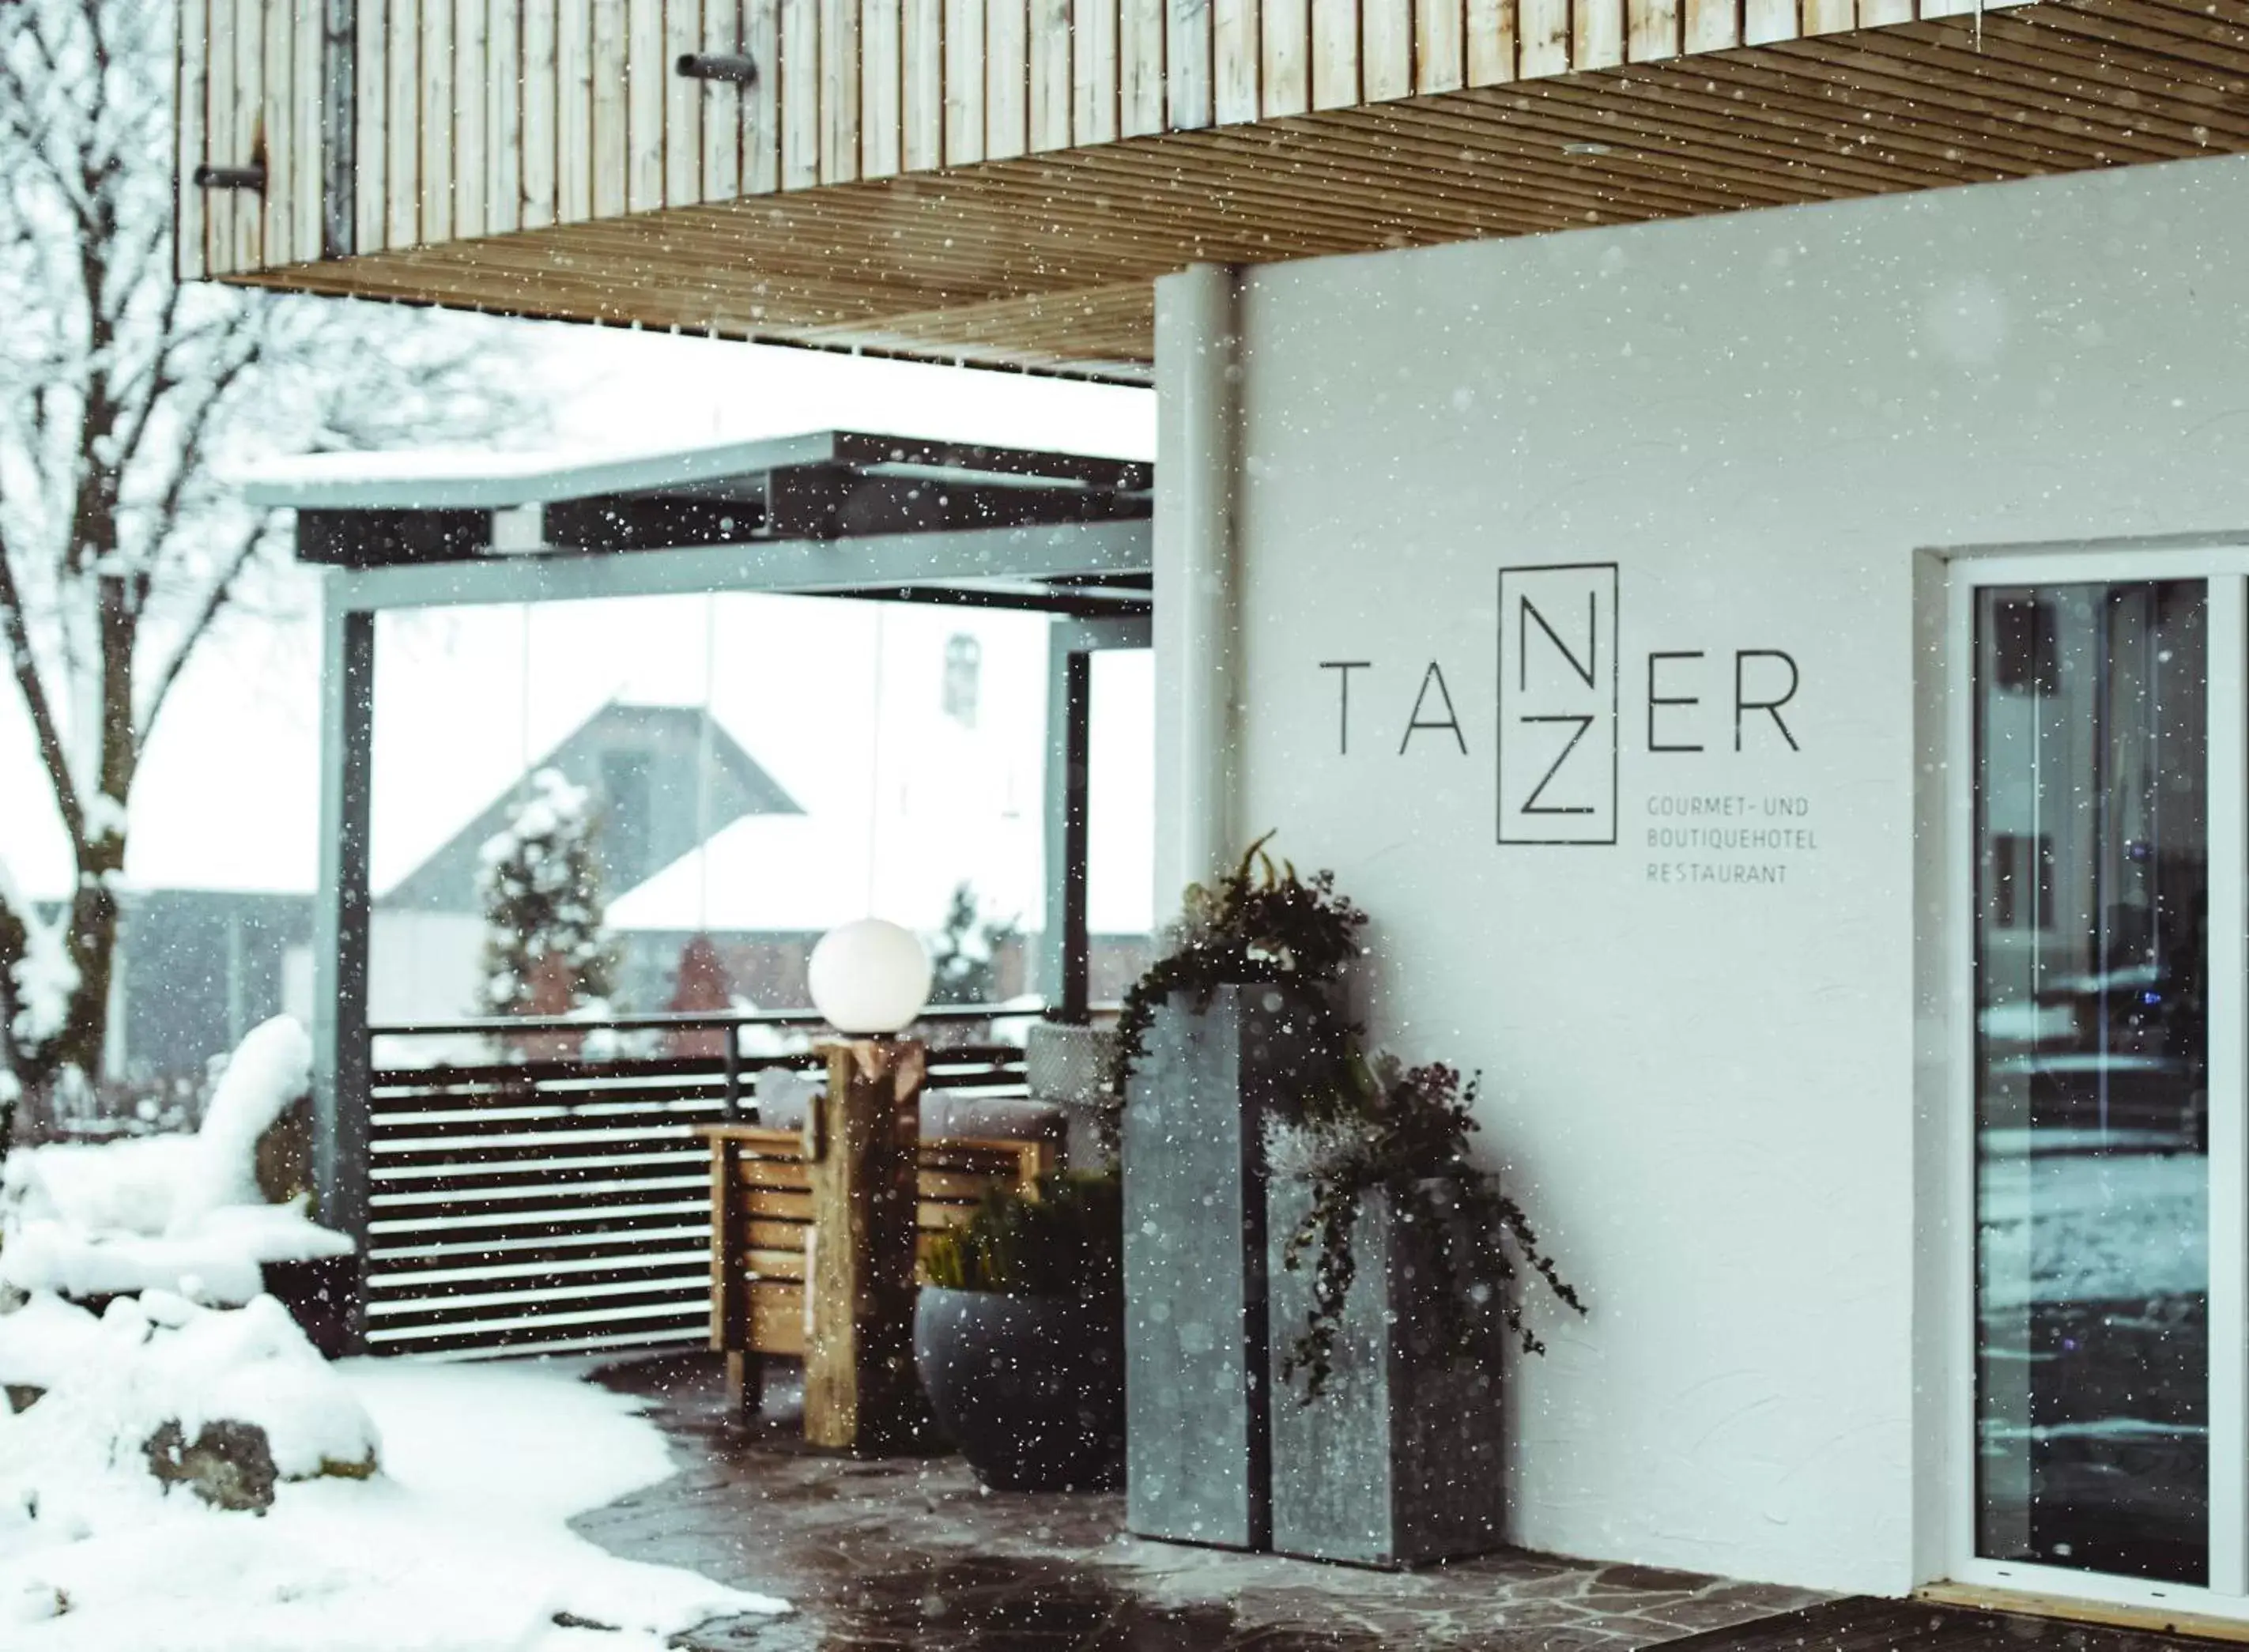 Facade/entrance, Winter in Gourmet - Boutique Hotel Tanzer